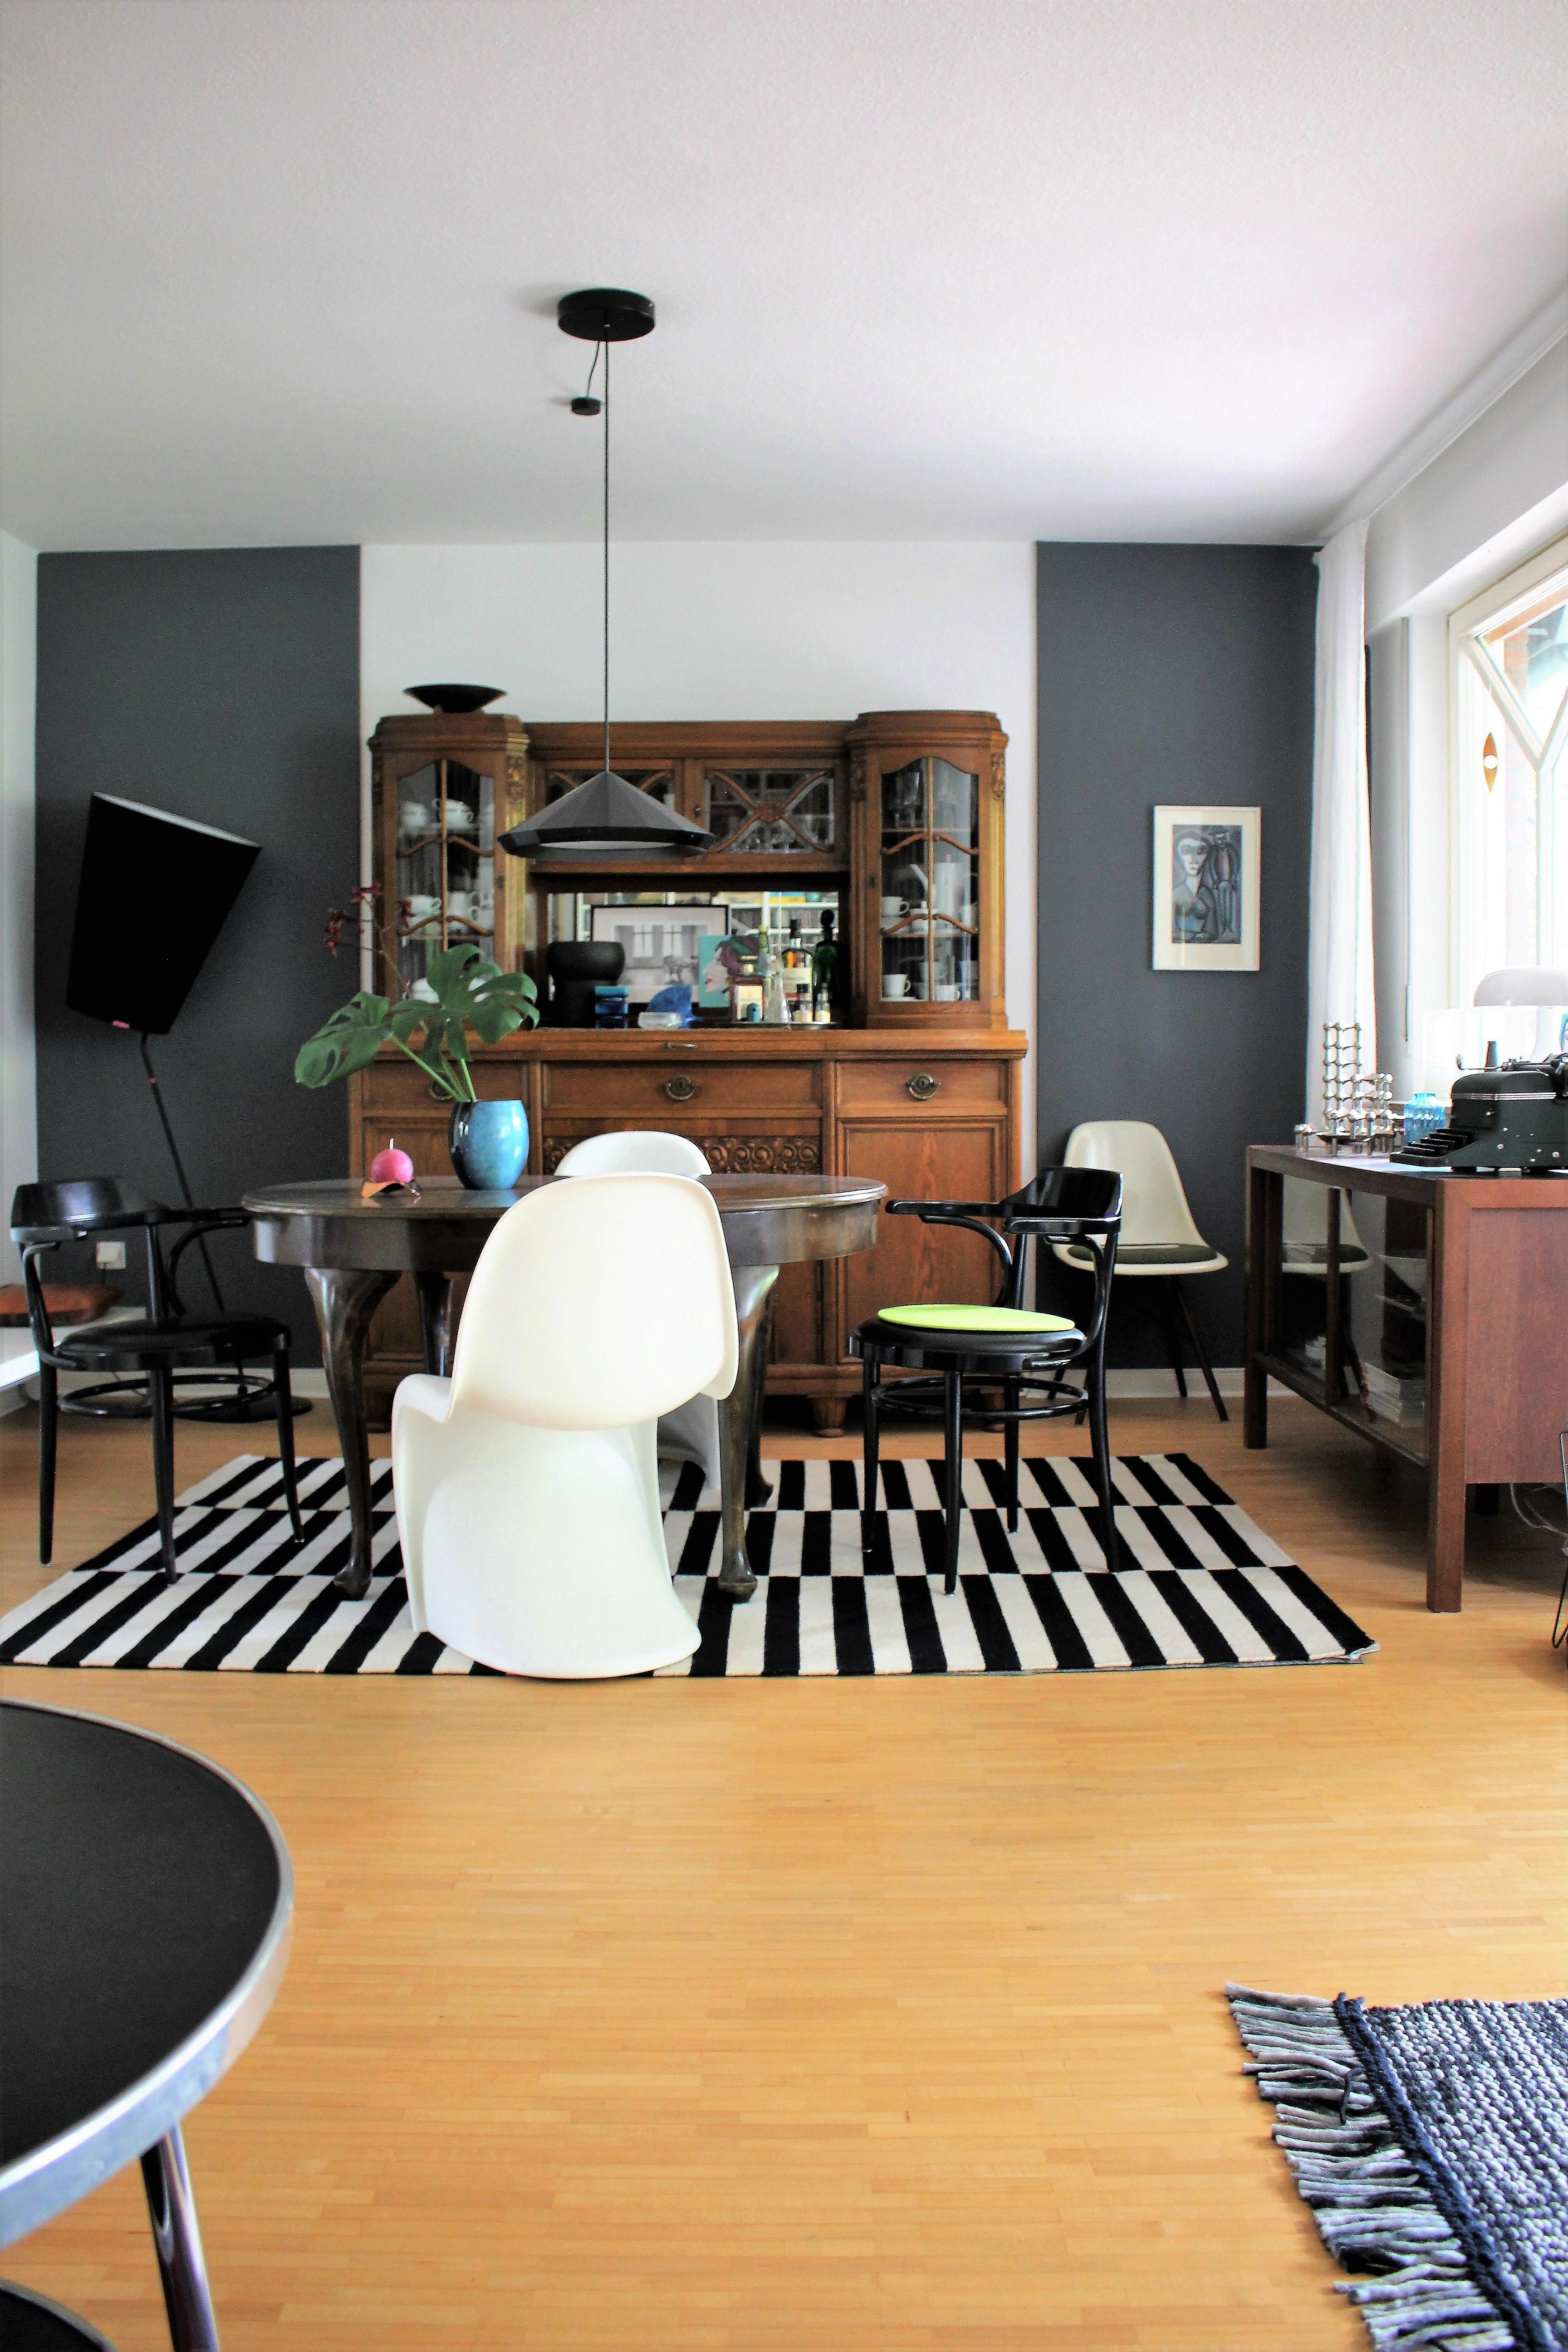 Auf den Tisch geblickt
#Esszimmer #Wohnzimmer
#Designklassiker #Teppich #altesBuffet #Kunst #Stuhlmix